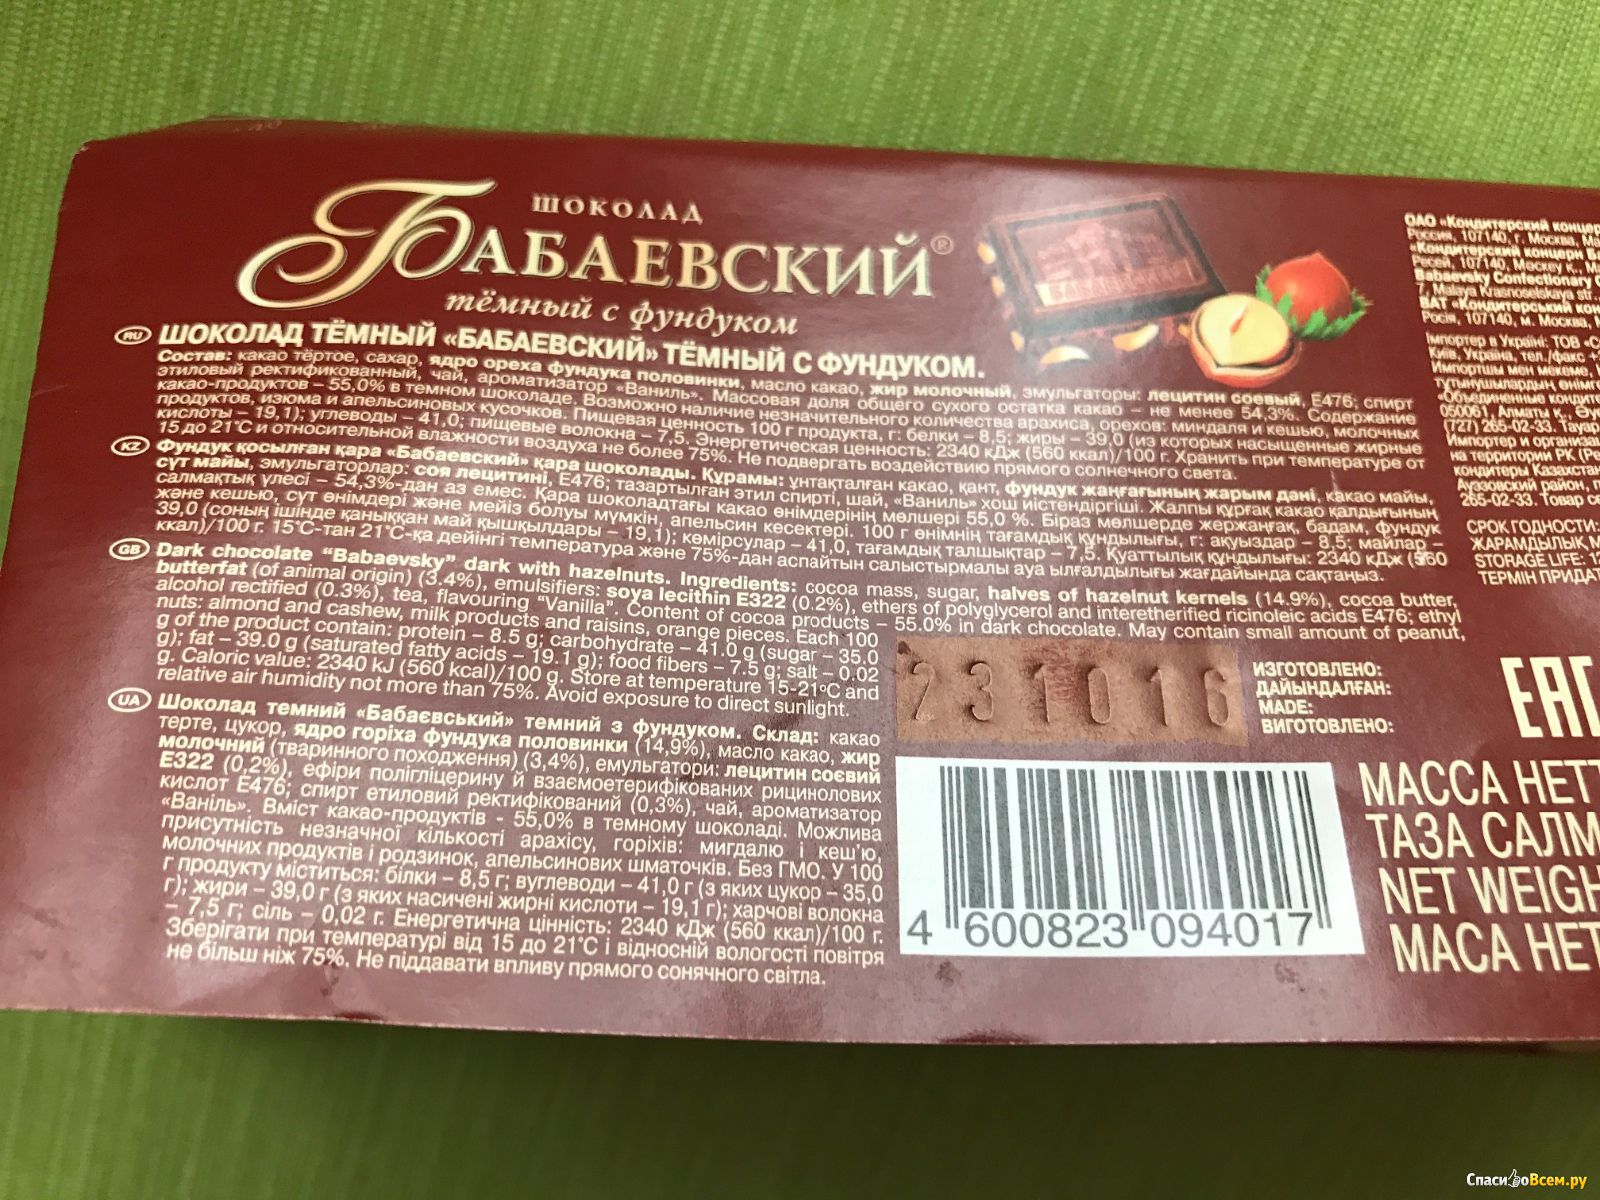 Состав шоколада на упаковке